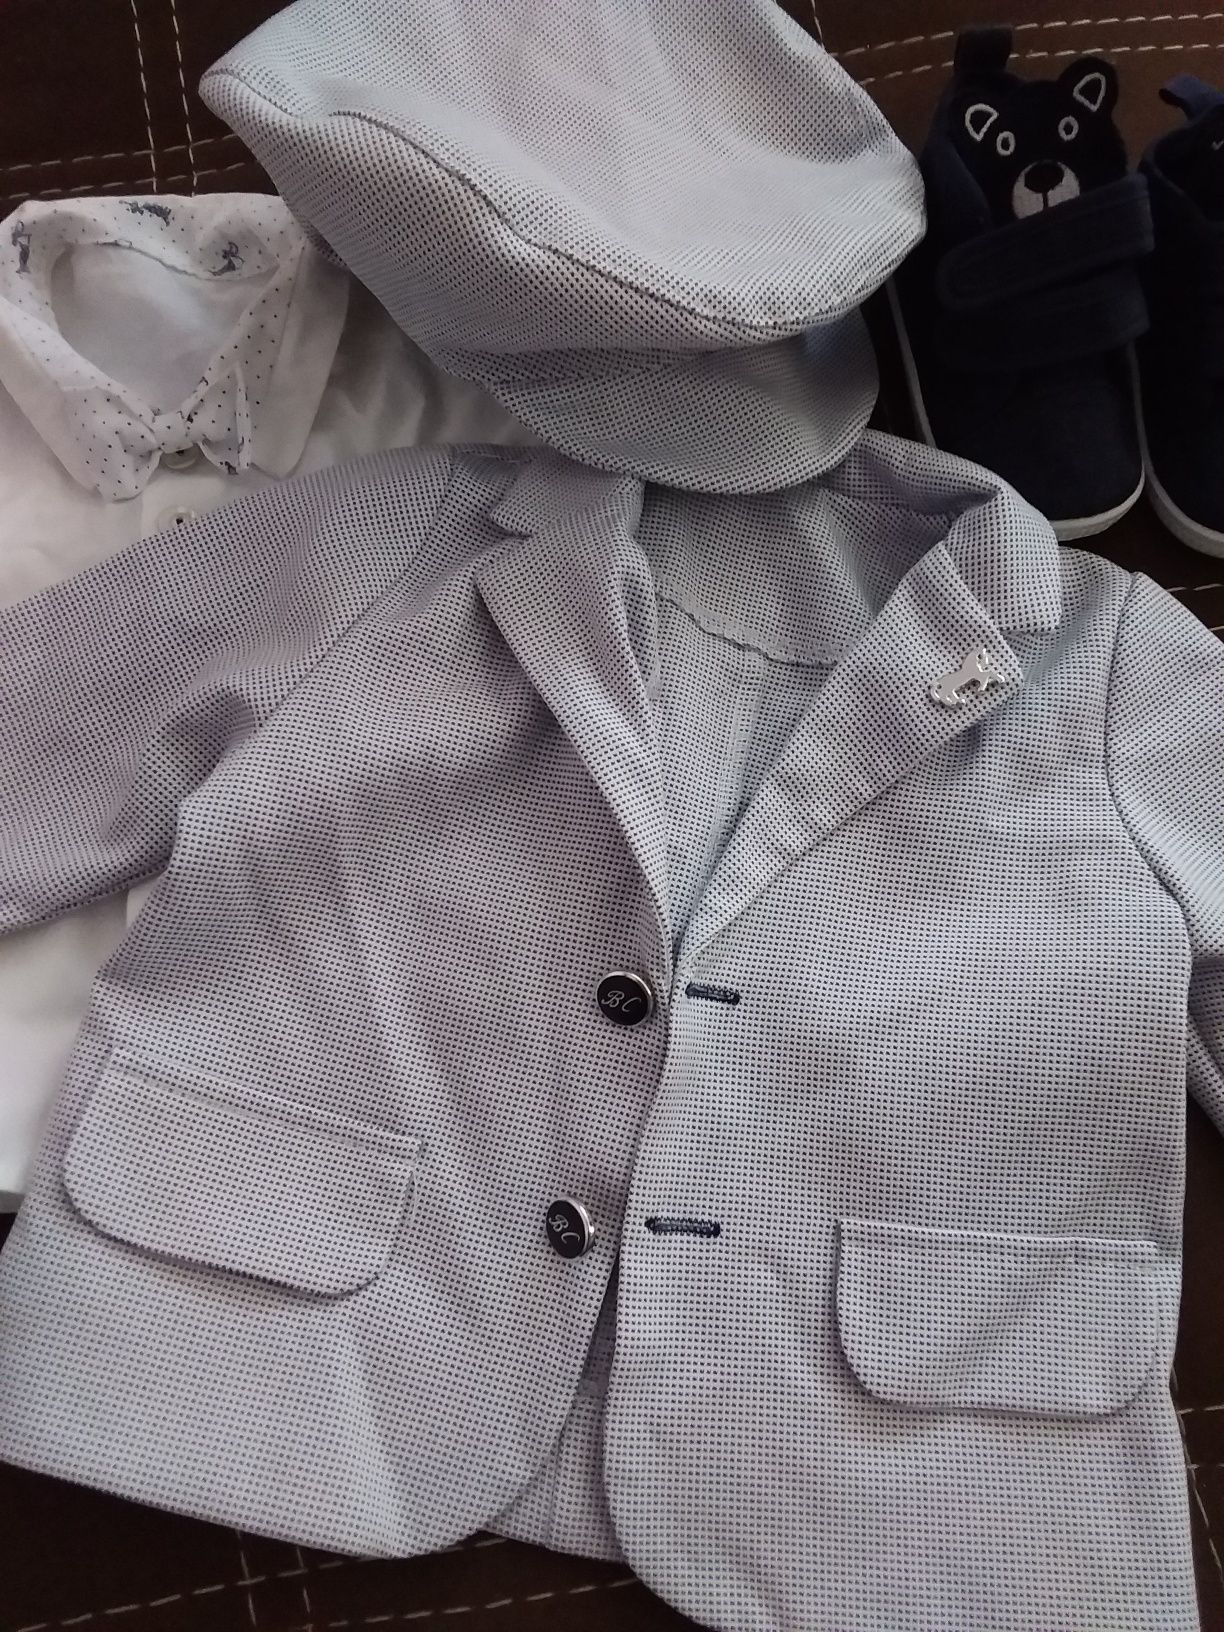 Ubranko galowe na 68 marynarka kaszkiet koszula buciki